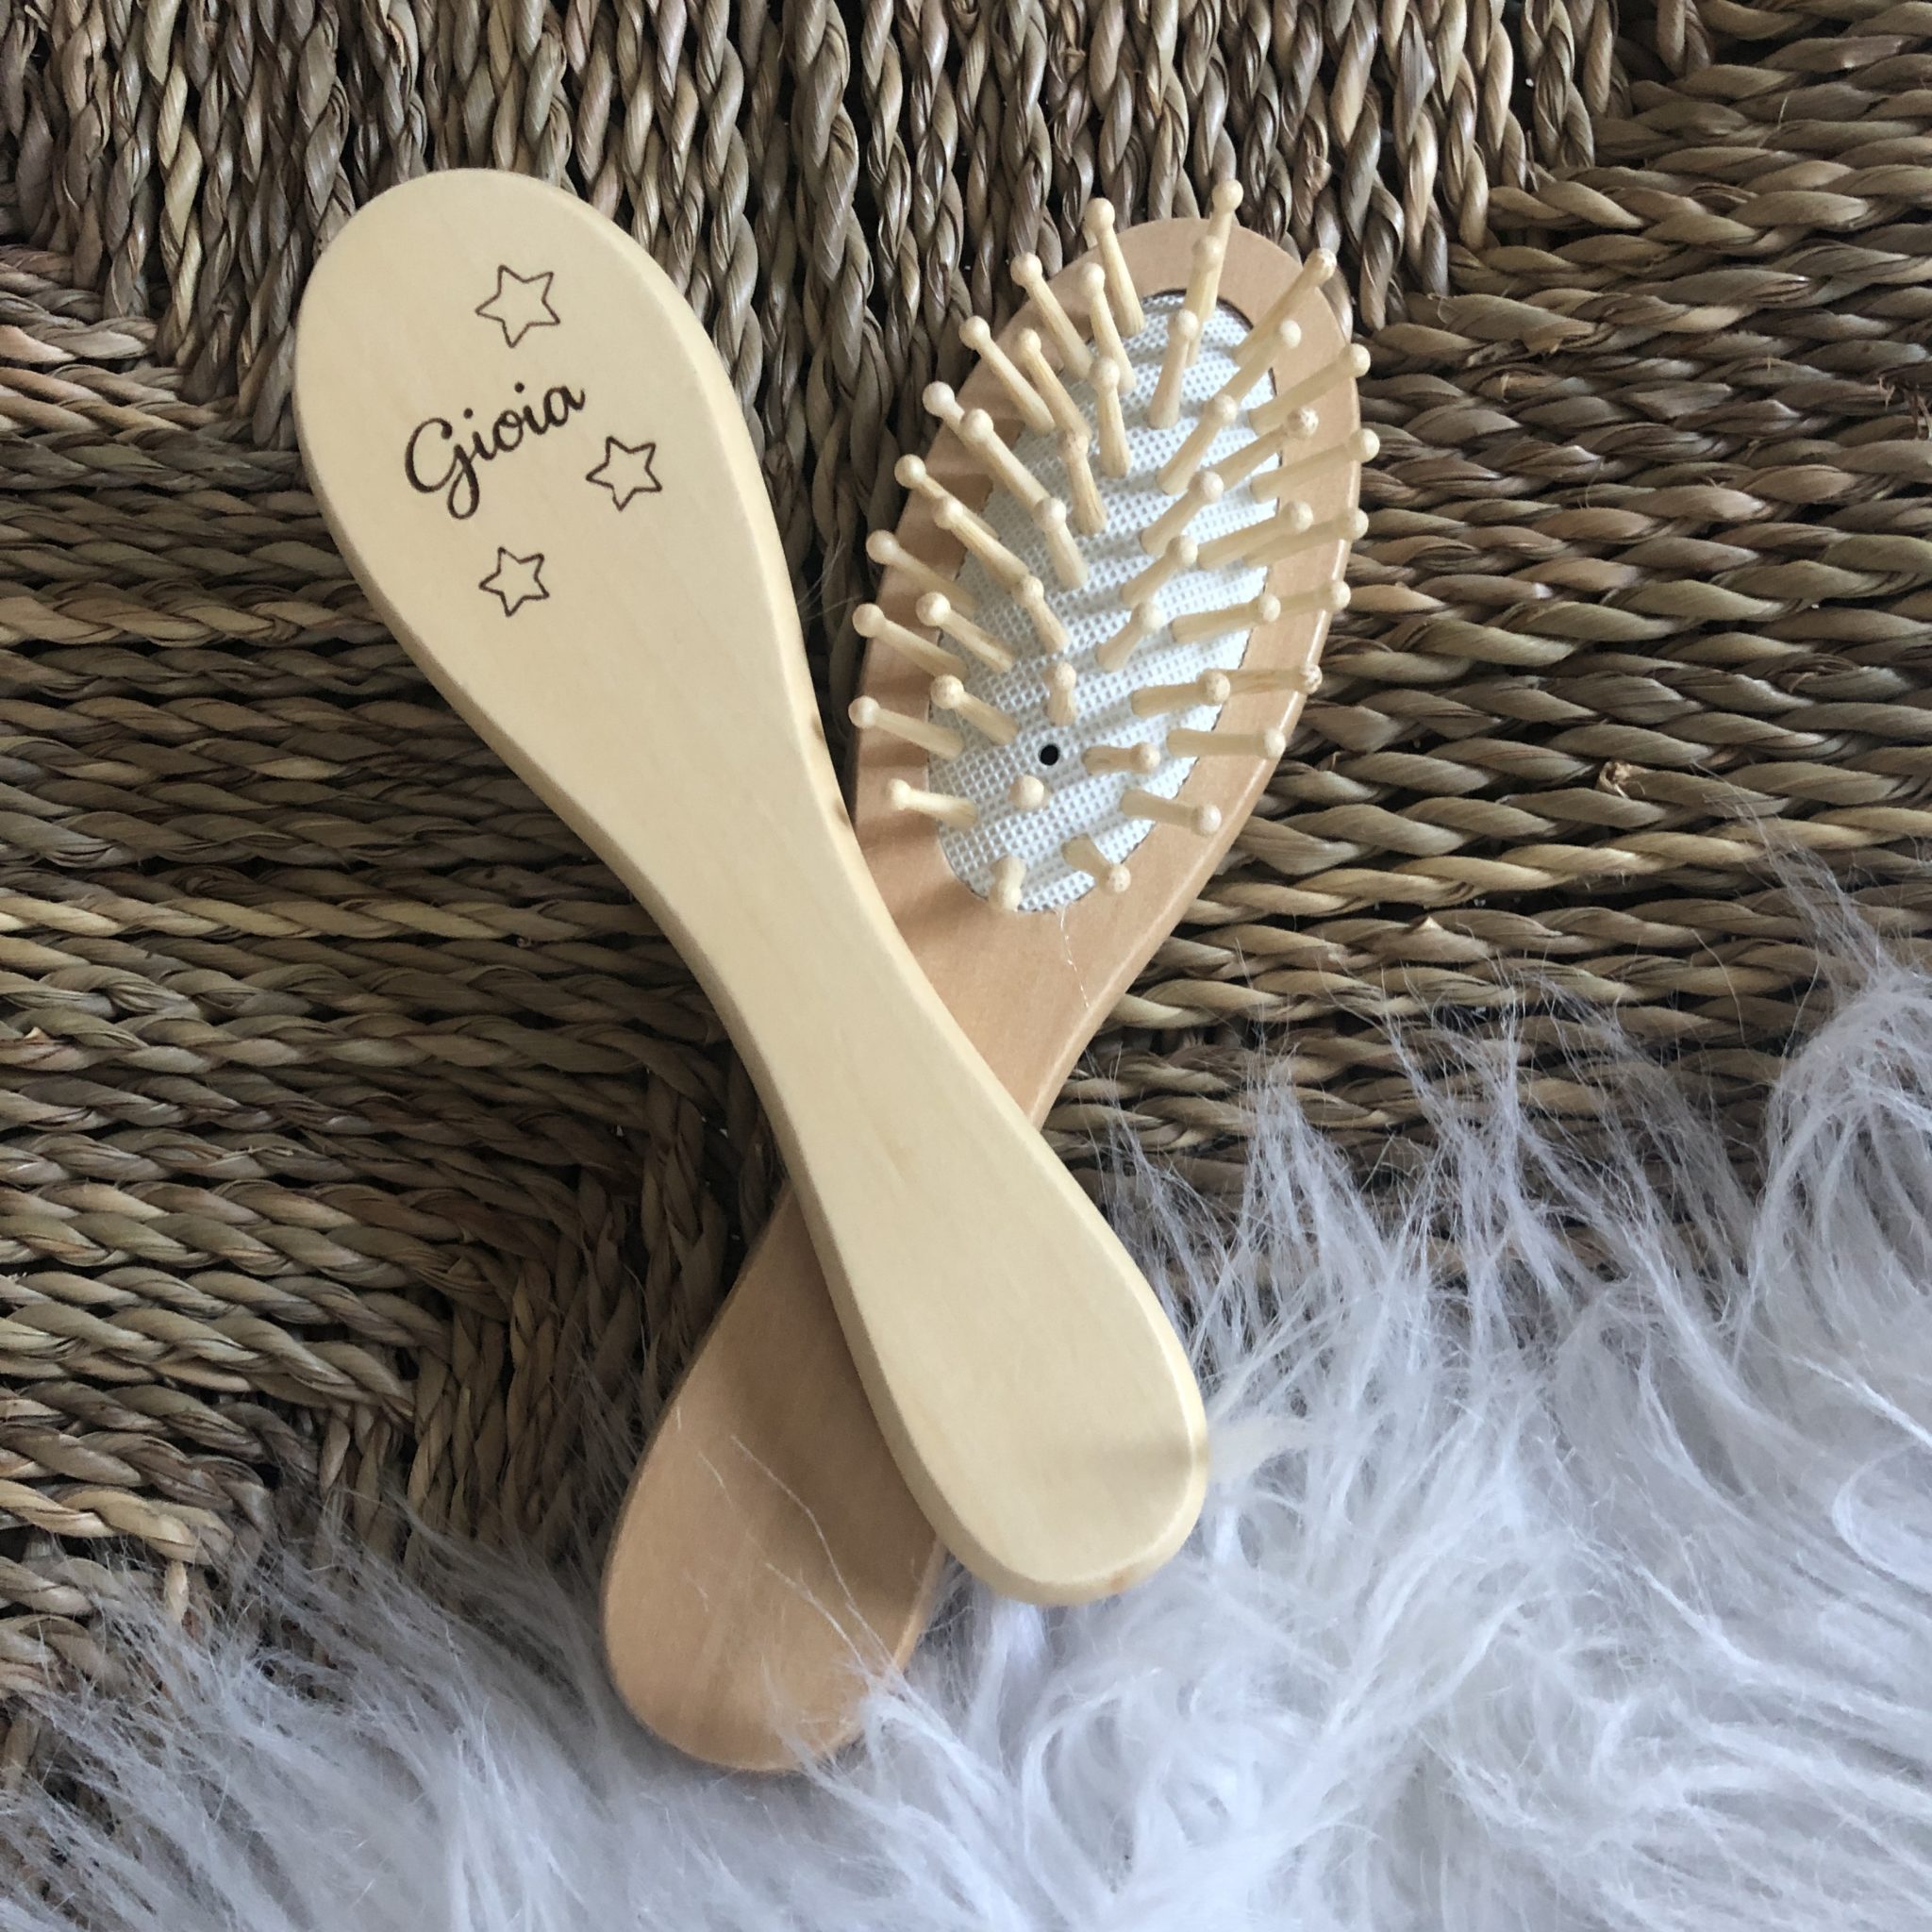 Brosse bébé en bois personnalisée : une jolie brosse à cheveux